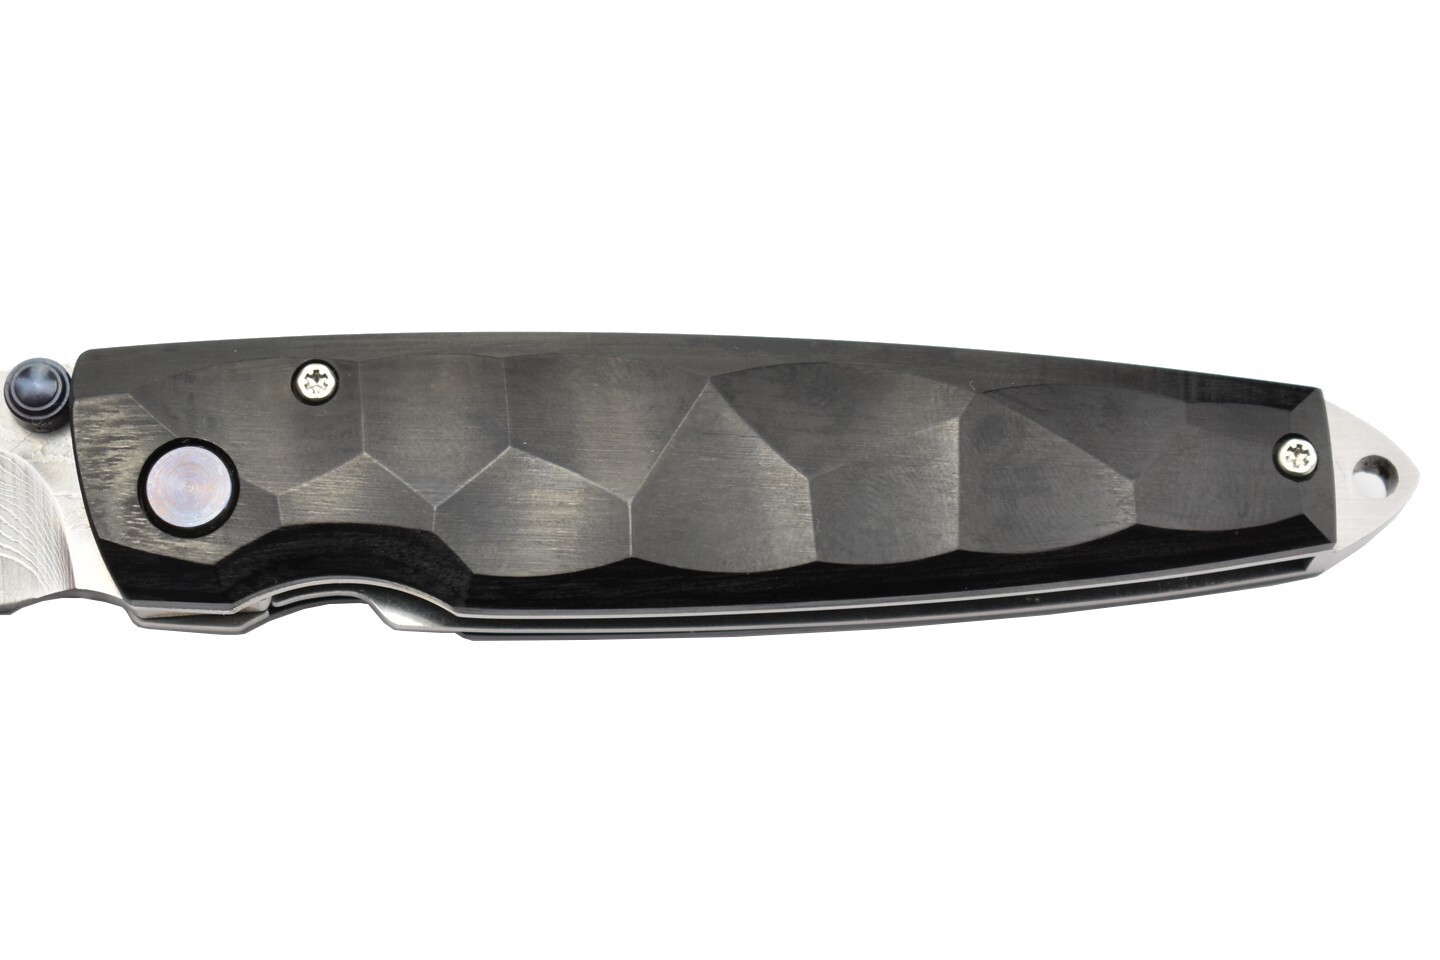 фото Складной нож mcusta shinra emotion tsuchi mc-0079dp, сталь vg-10, рукоять pakka wood